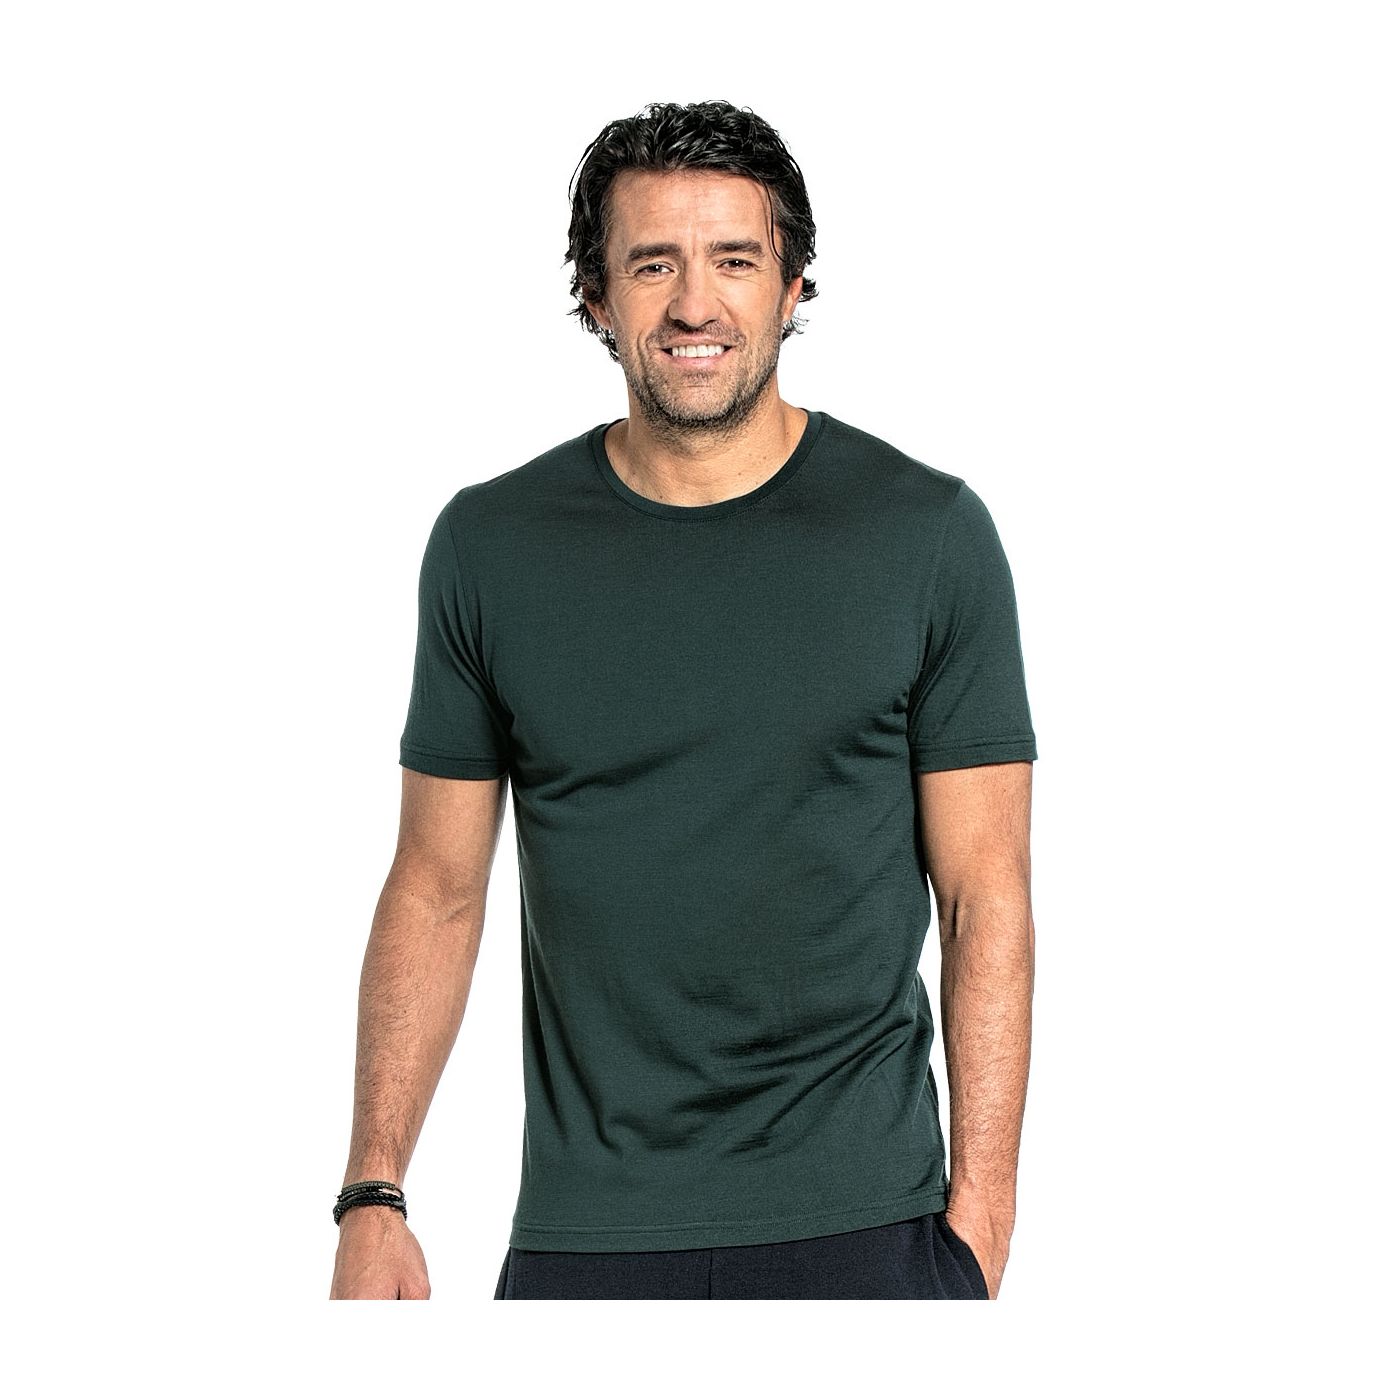 T-shirt voor mannen gemaakt van merinowol in het Donkergroen